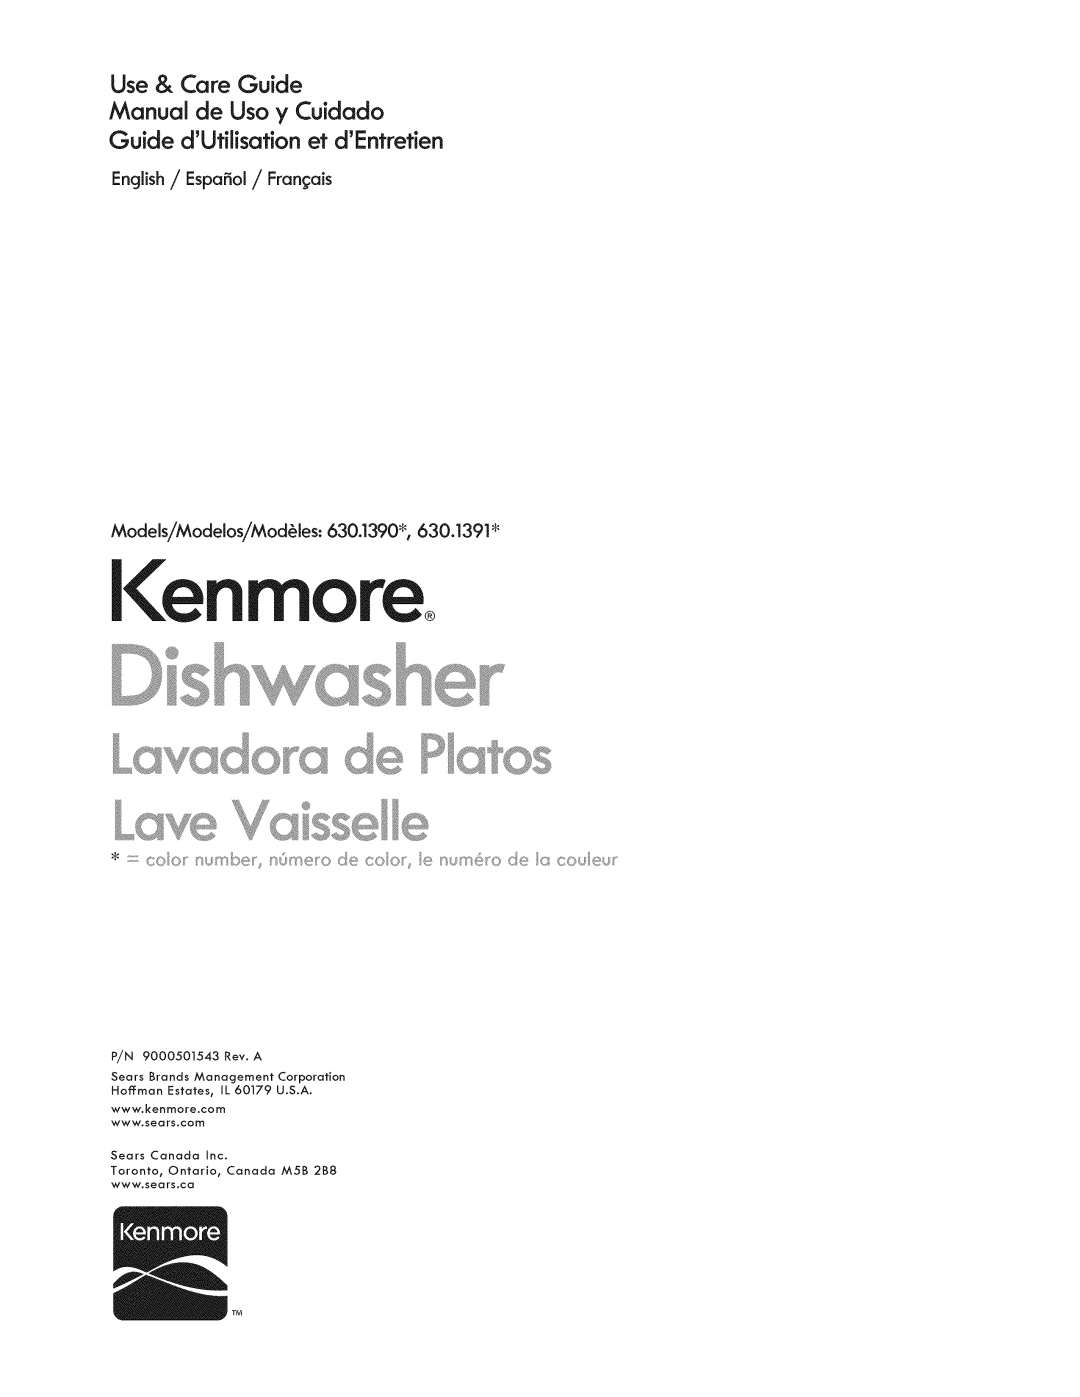 Kenmore 630.1390, 630.1391 manual Use & Care Guide Manual de Uso y Cuidado, Guide dUfilisafion et dEntrefien, lenmoreo 